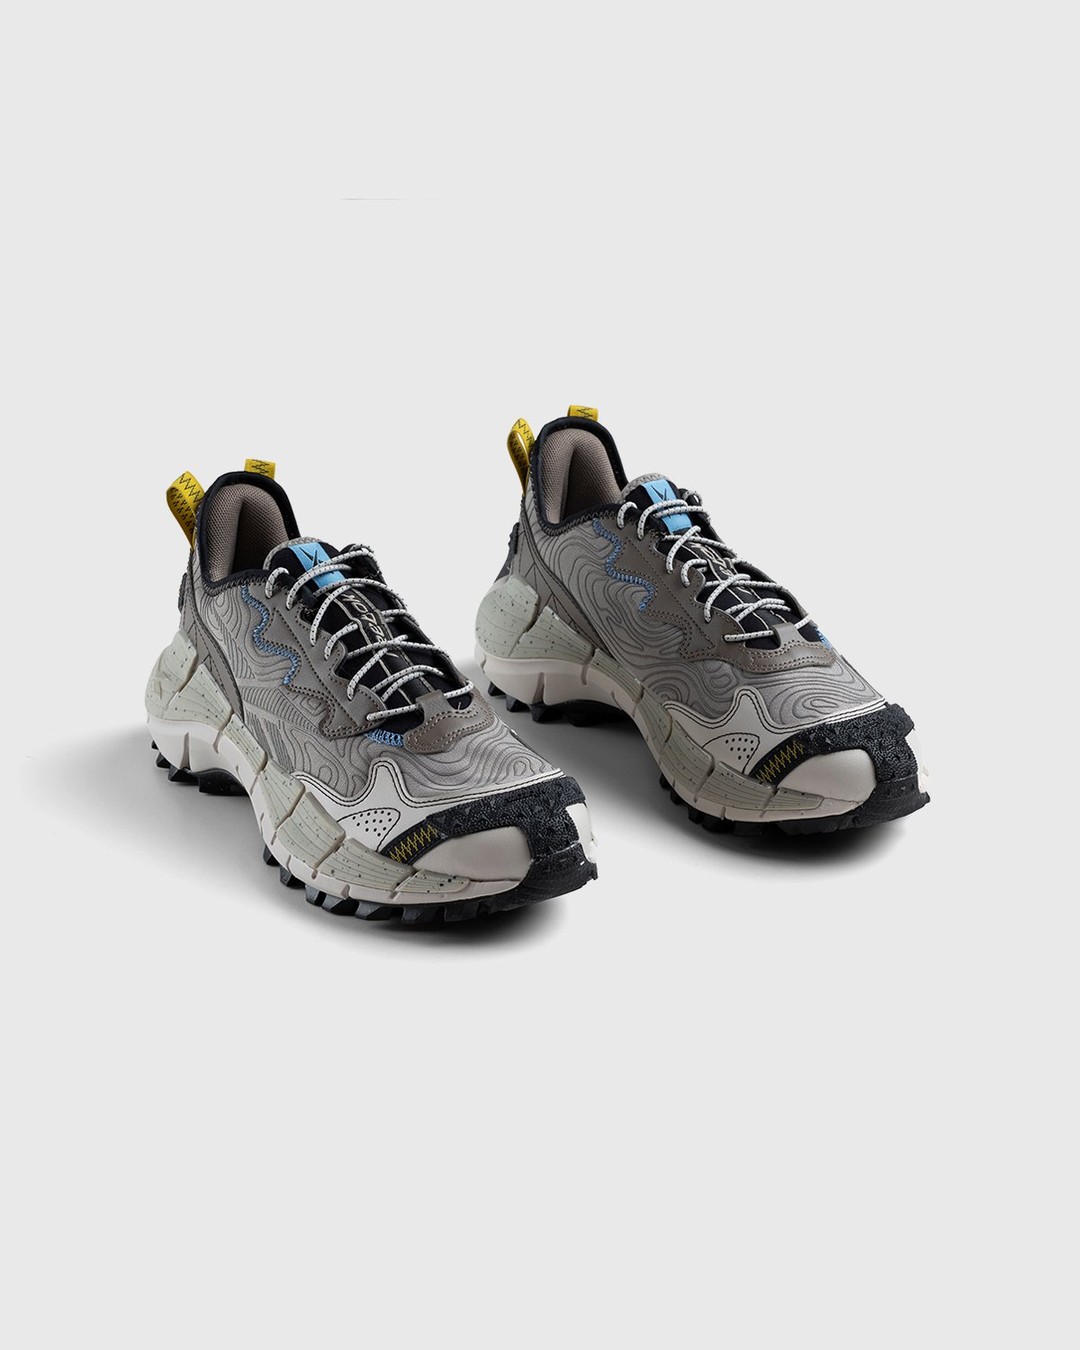 Reebok – Zig Kinetica II Edge Boulder Grey / Essential Blue / Sulfur Green - Sneakers - Grey - Image 3